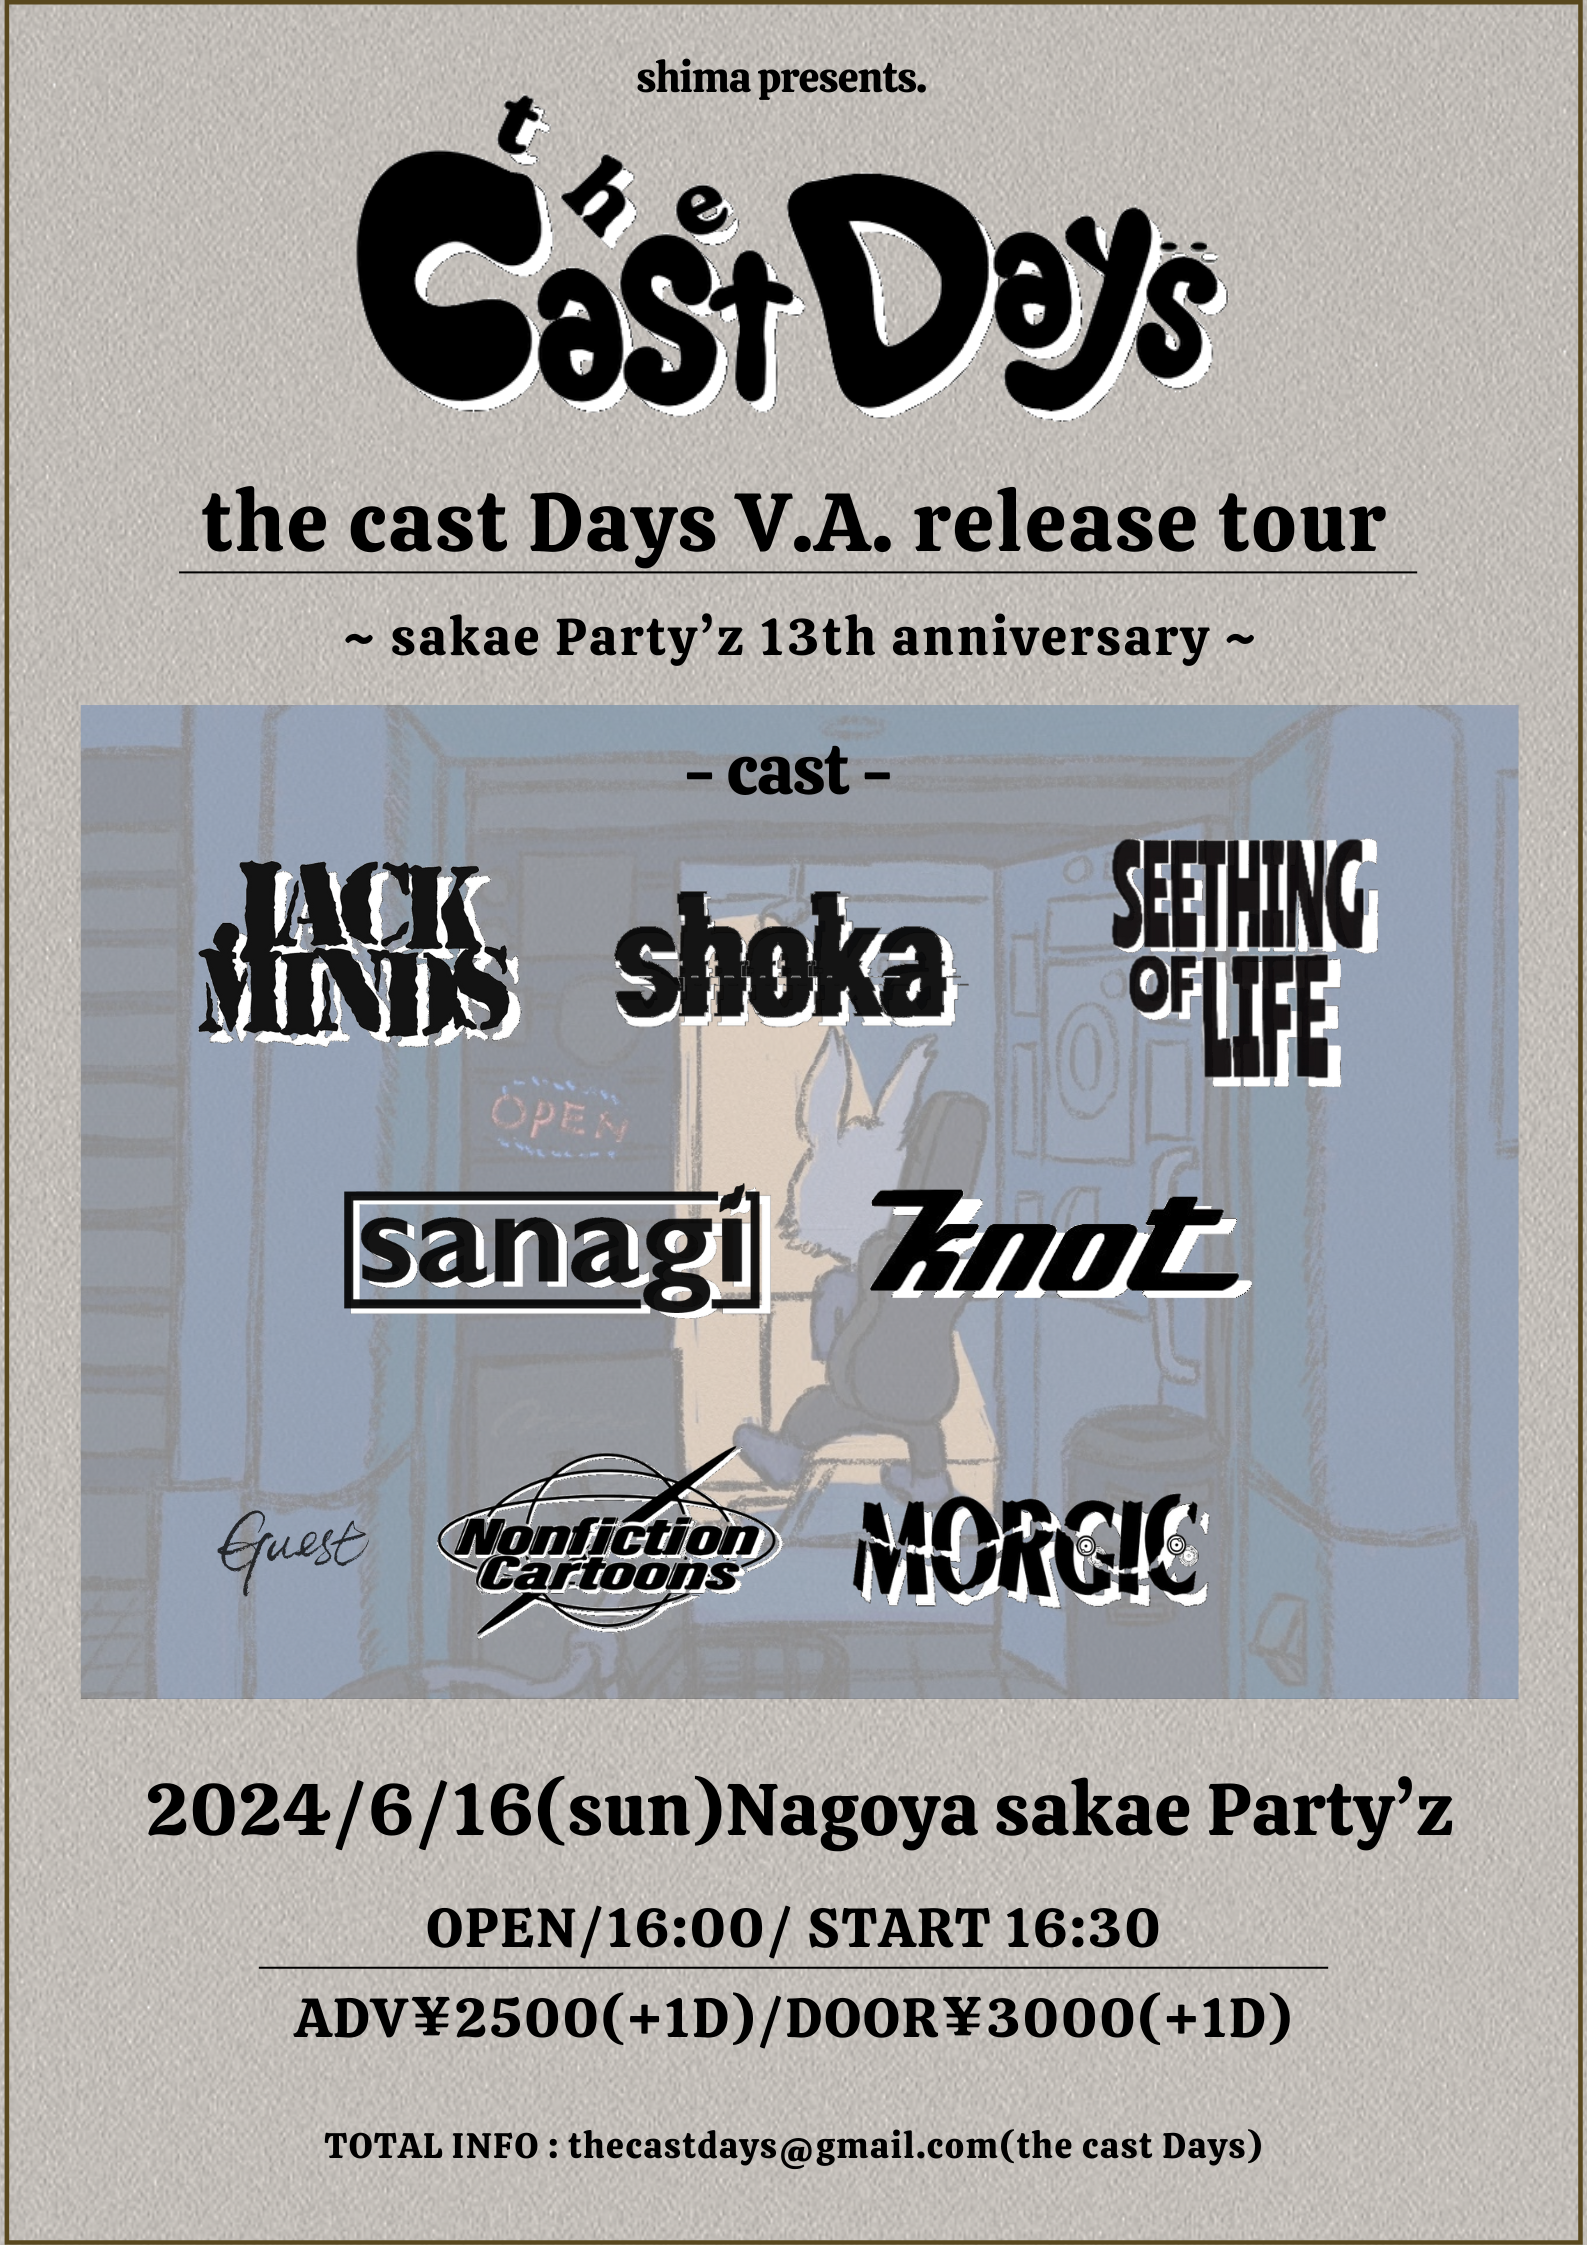 shima pre. 「the cast Days」 the cast Days V.A. release tour